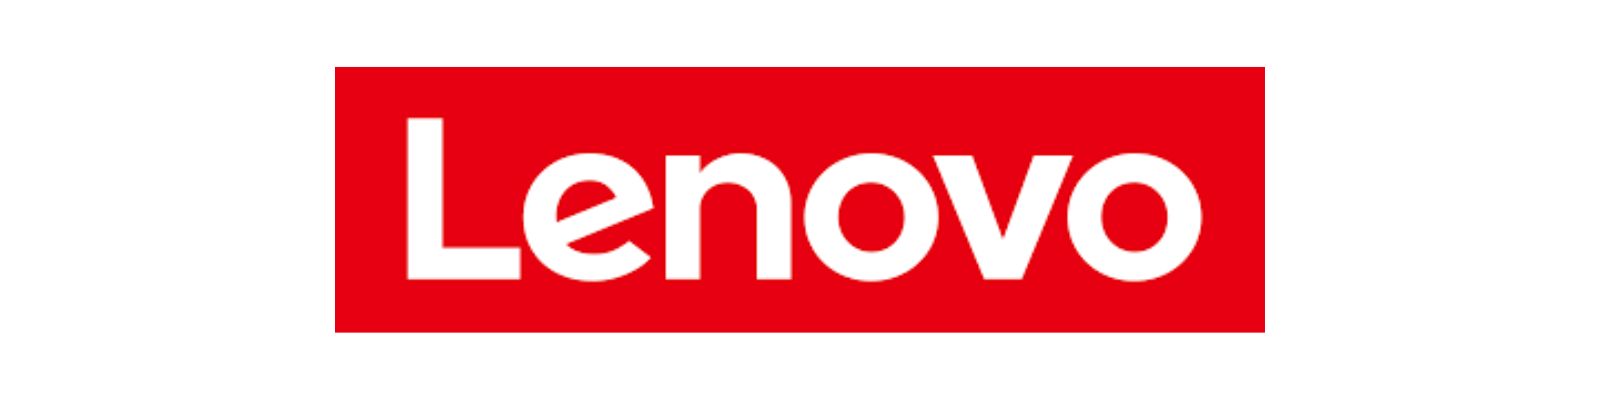 Lenovo é confiável? Saiba a Verdade e Não Compre antes de Ler!